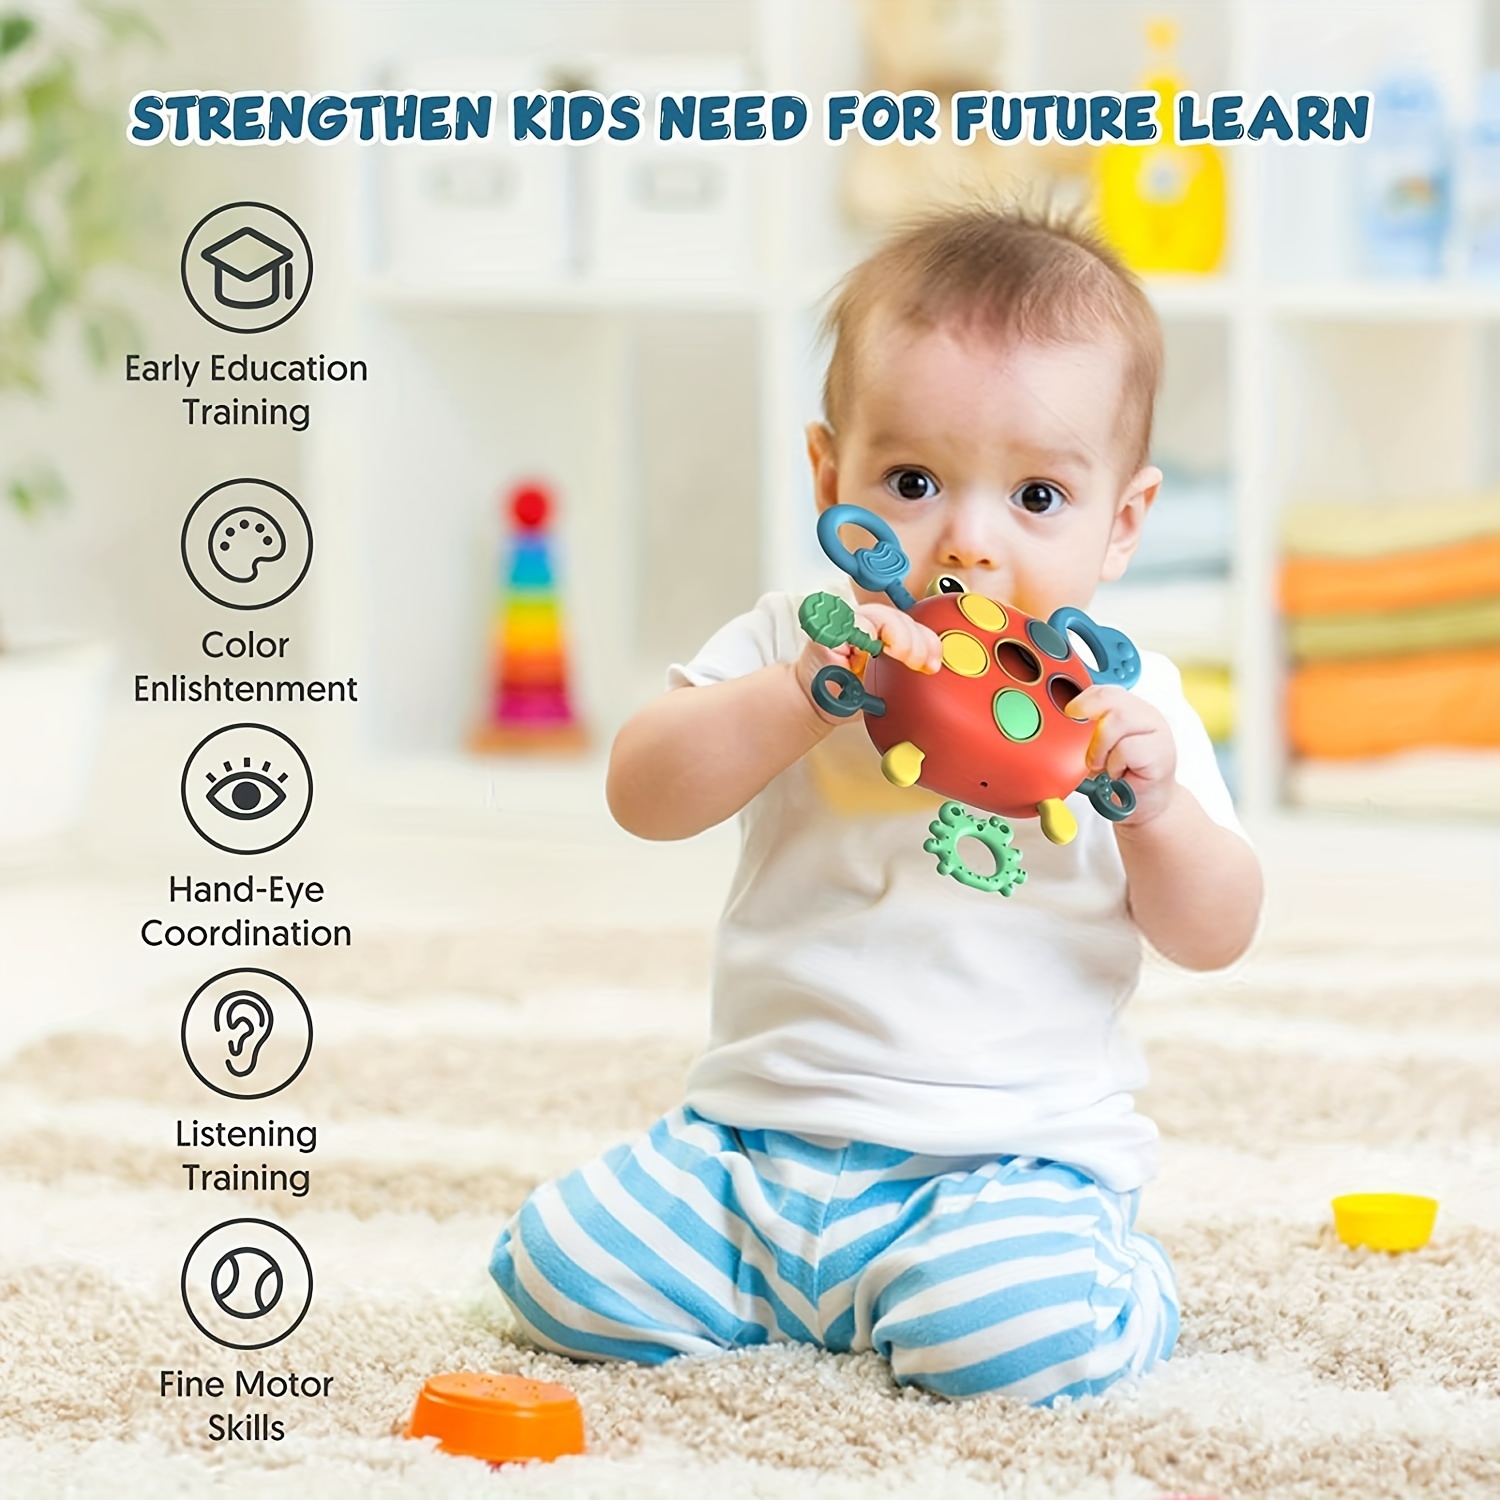 Juguetes para bebés de más de 18 meses, juguetes de viaje y dentición para  bebé, juguetes sensoriales de cuerda de grado alimenticio para niños